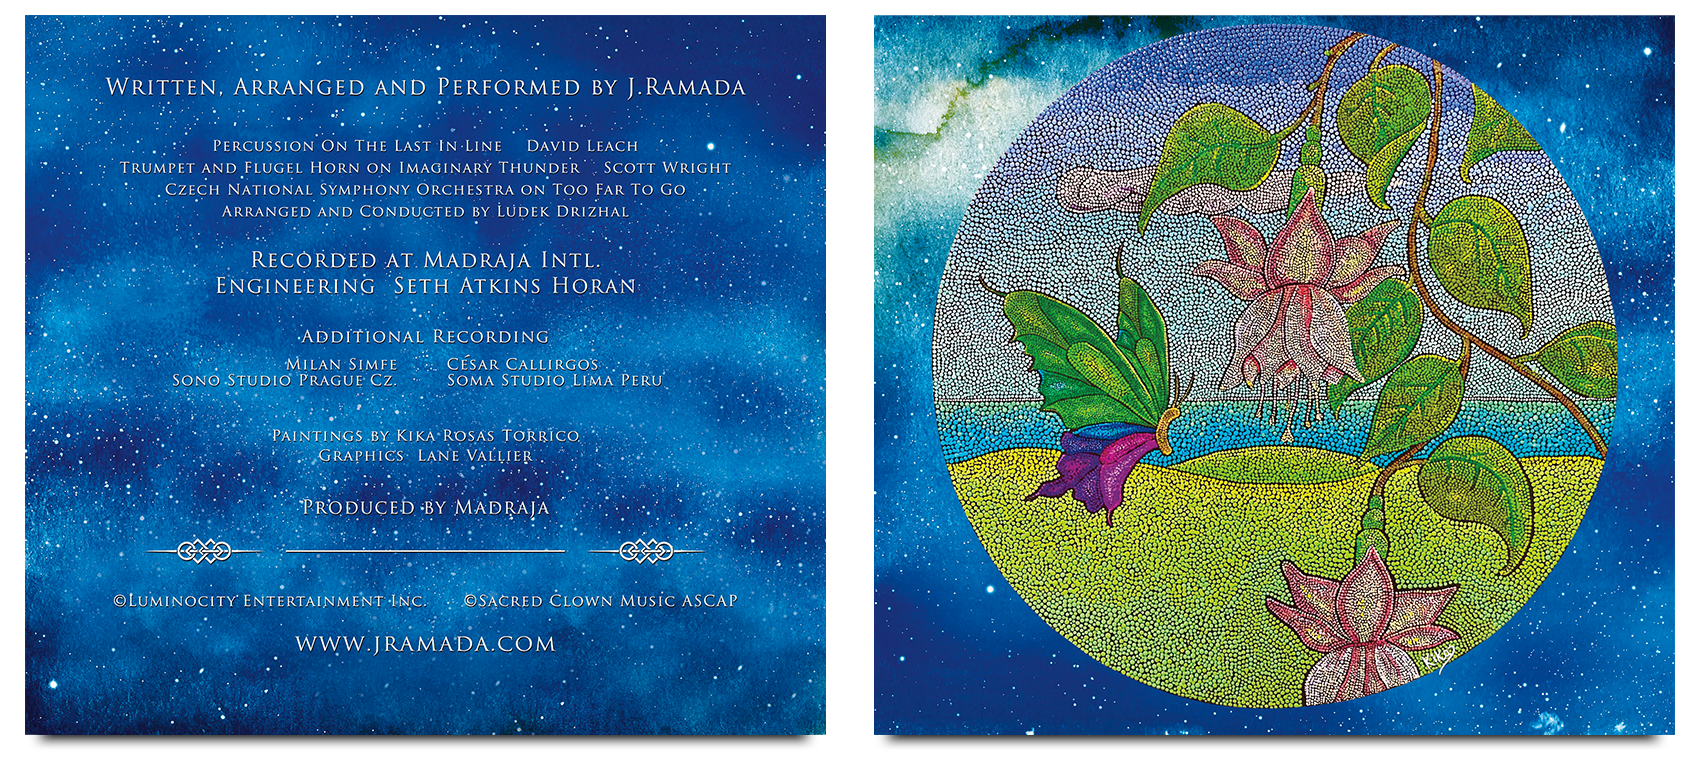 j.ramada turquoise album cover inner panel designs